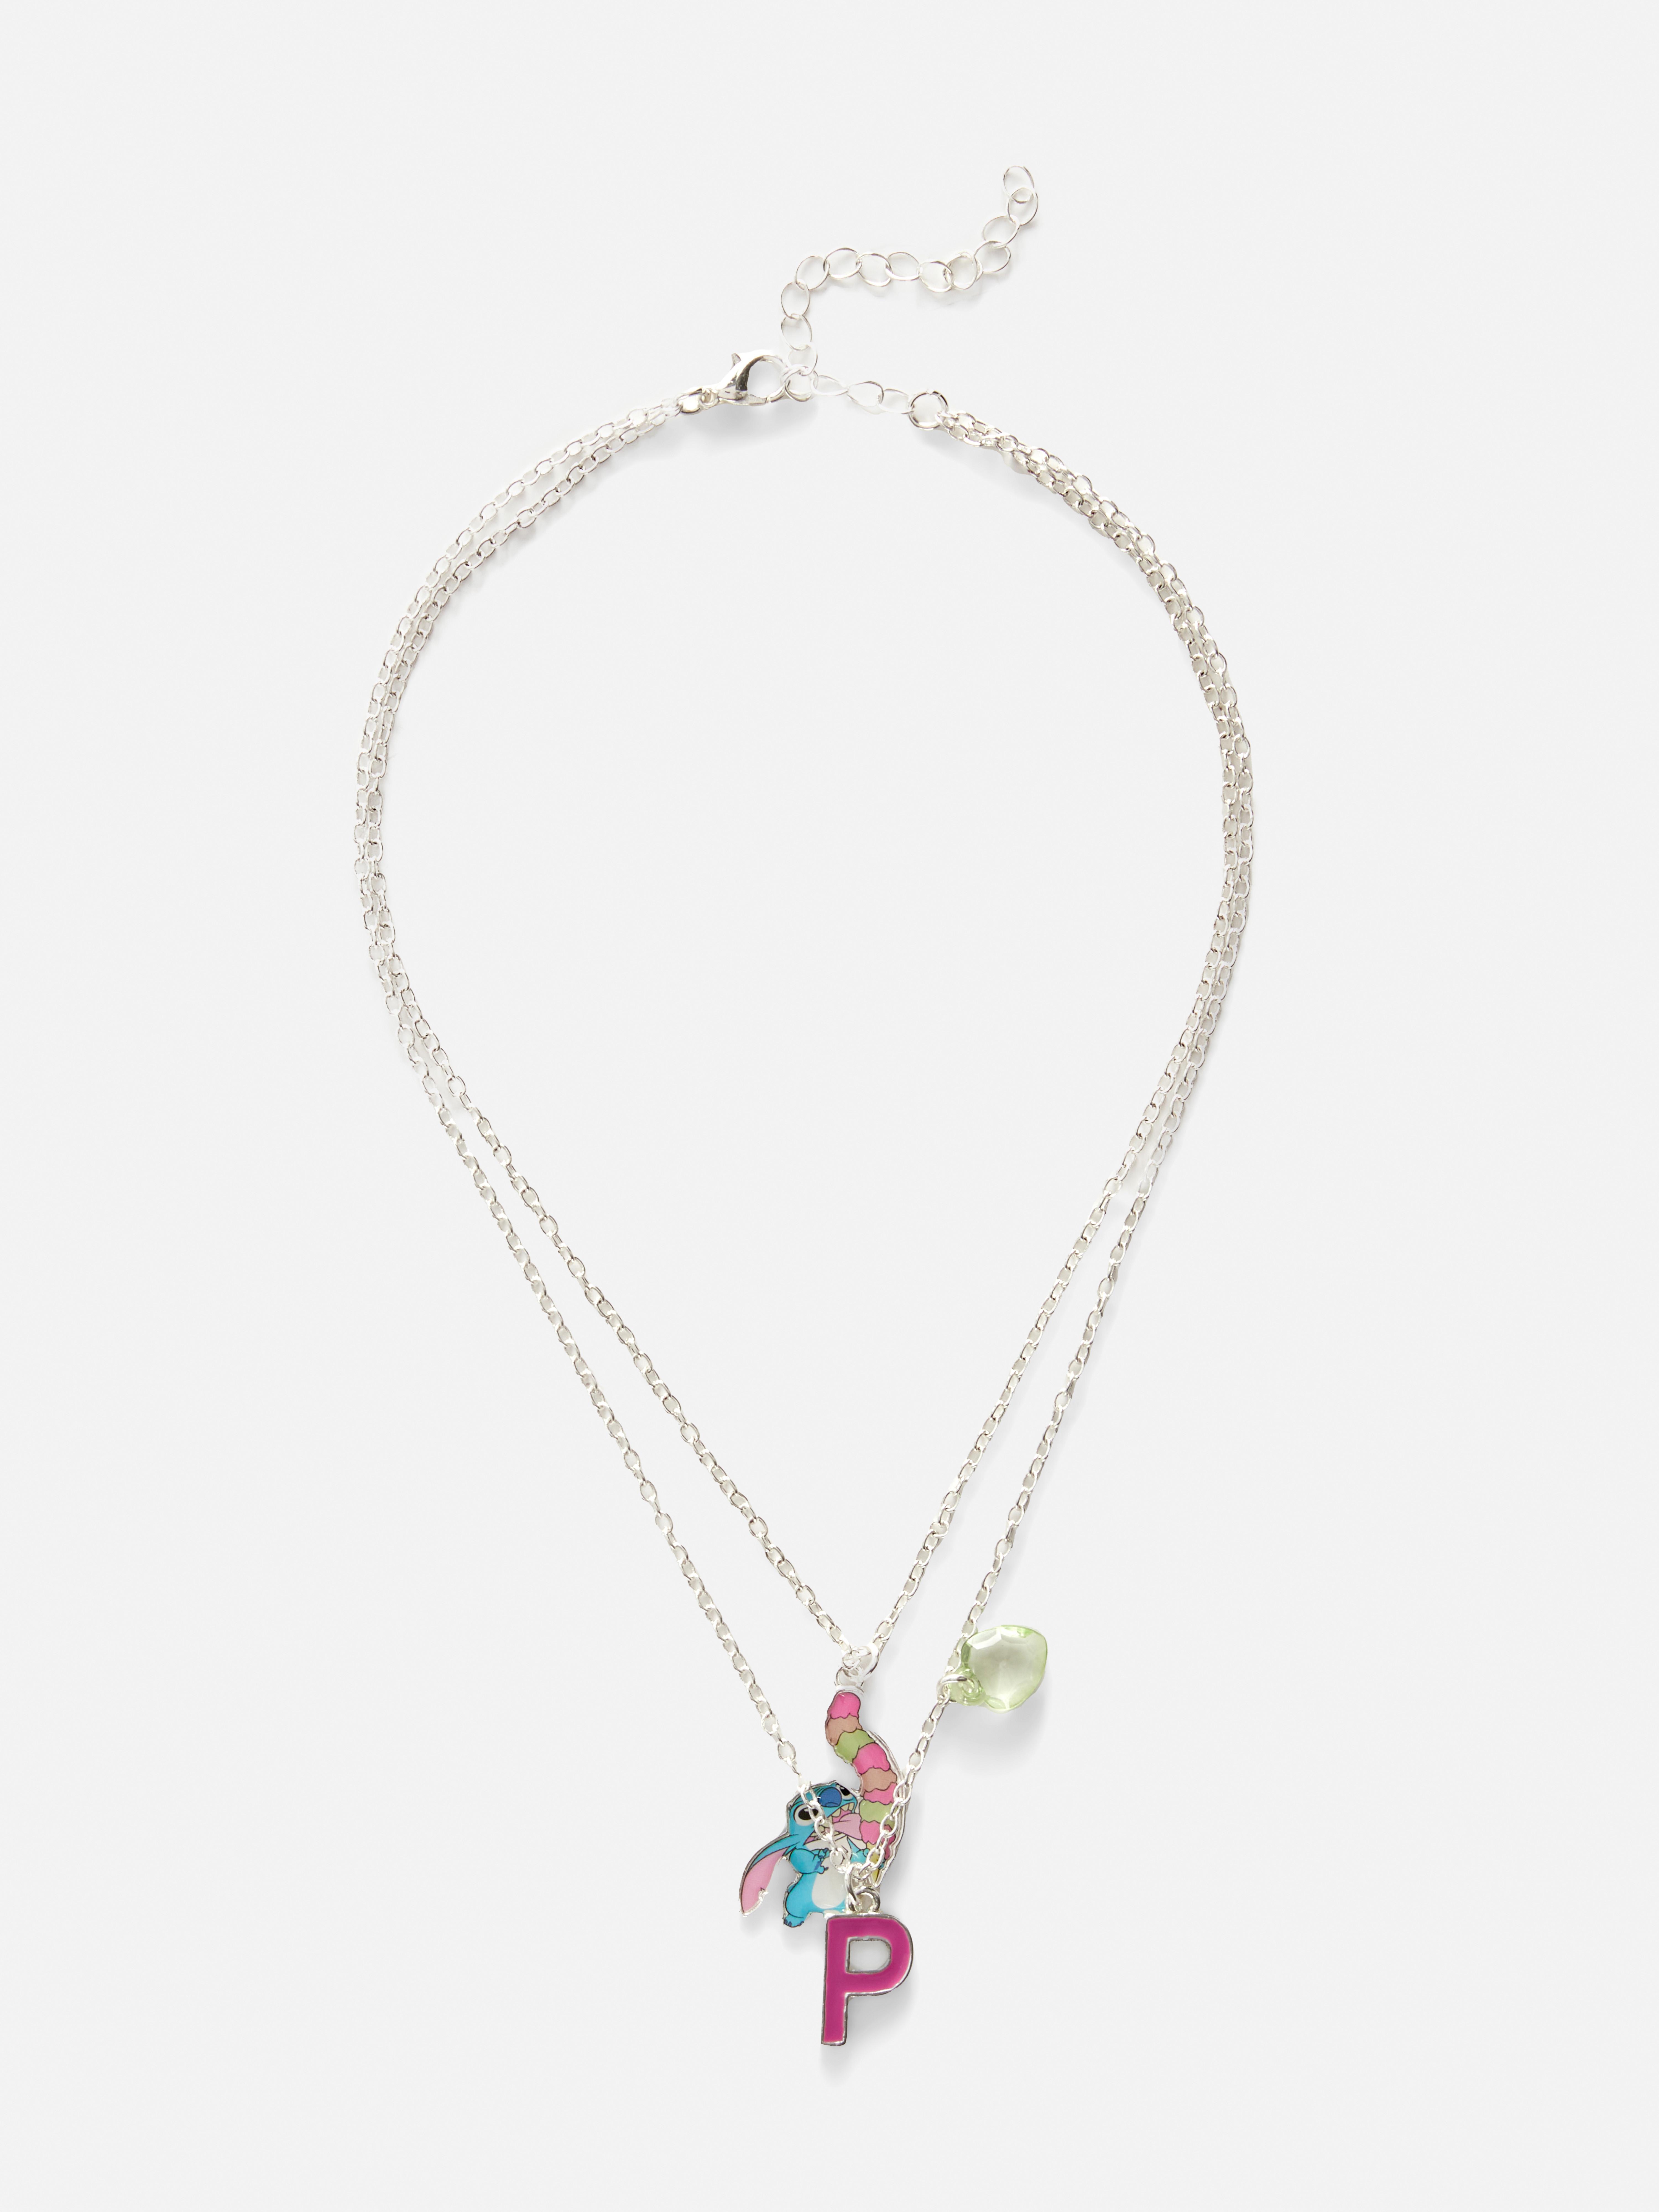 Disney's Lilo & Stitch Initial Necklace